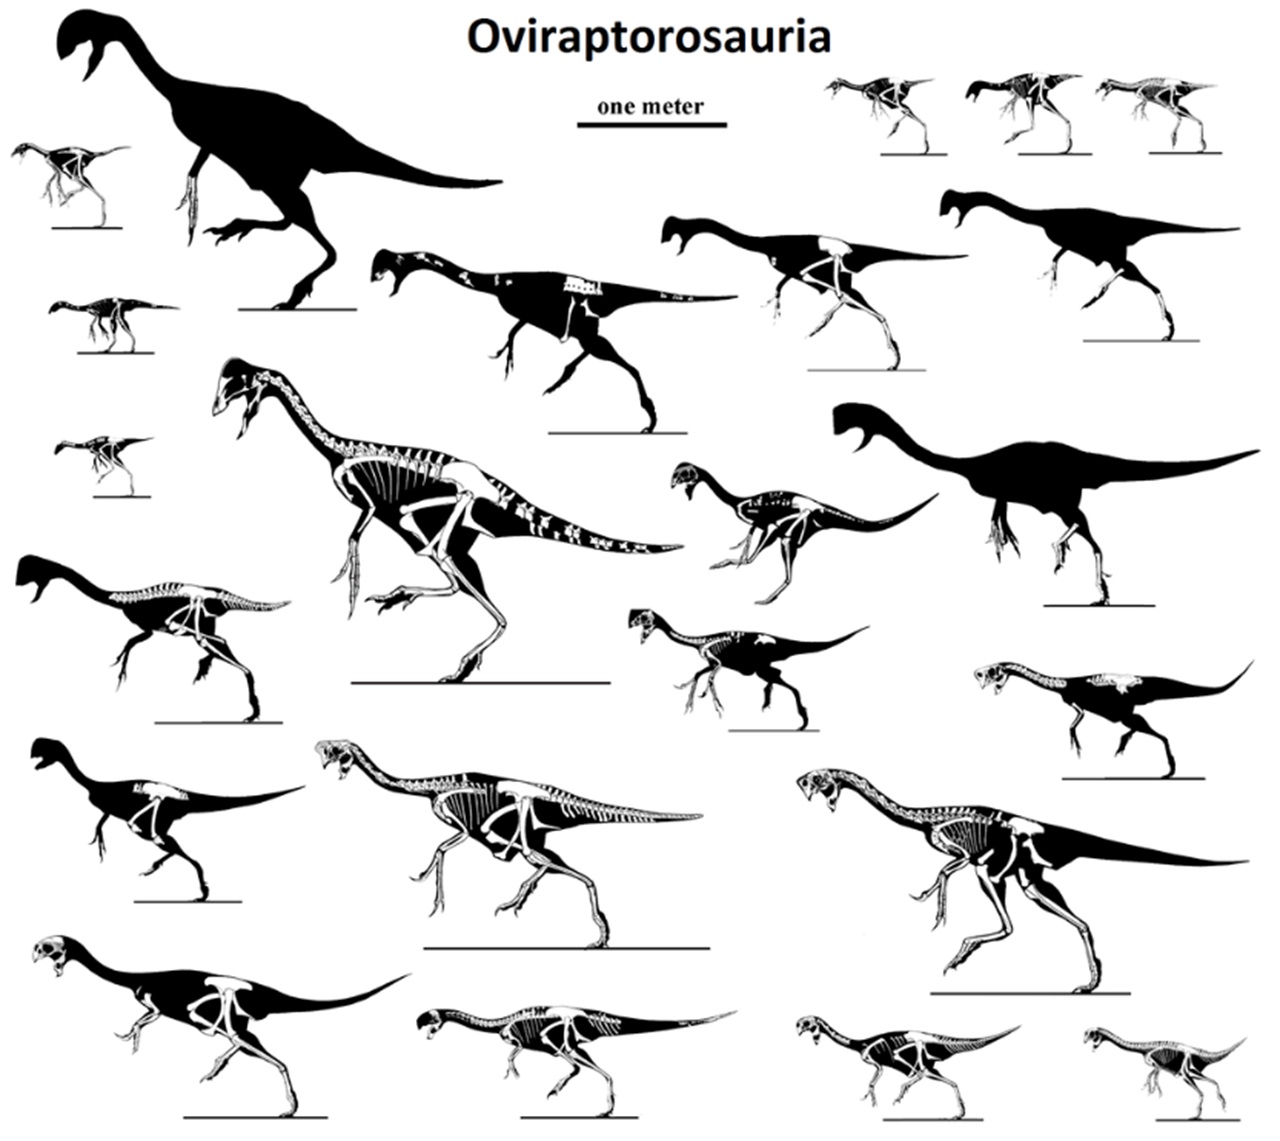 embrione di dinosauro diversi esemplari di oviraptorosauri